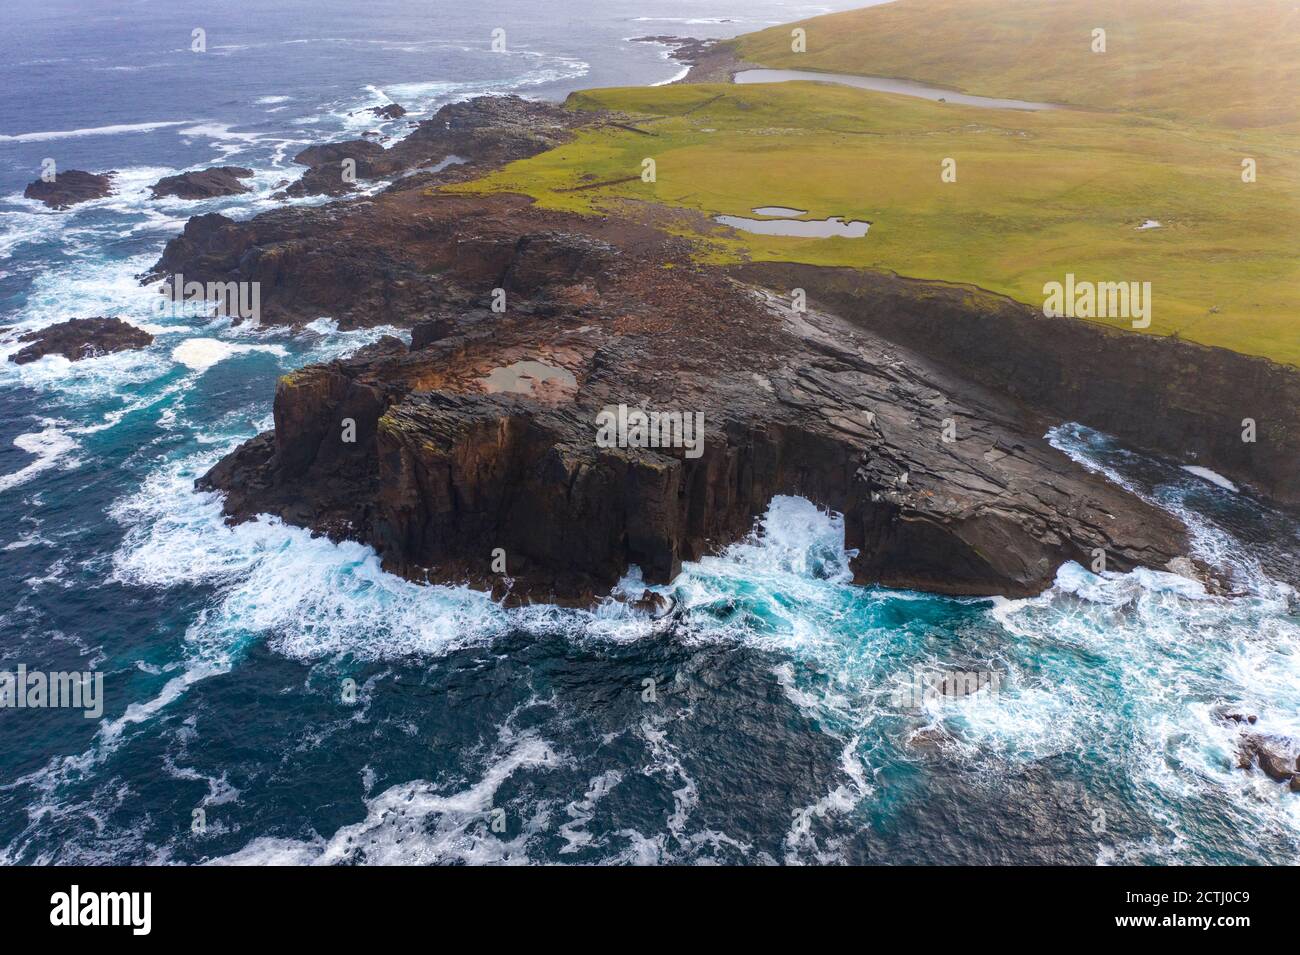 Spettacolare formazione piroclastica di cenere a Grind o' da Navir, sulla costa di Eshaness, Northmavine, terraferma settentrionale, Isole Shetland, Scozia, Regno Unito Foto Stock